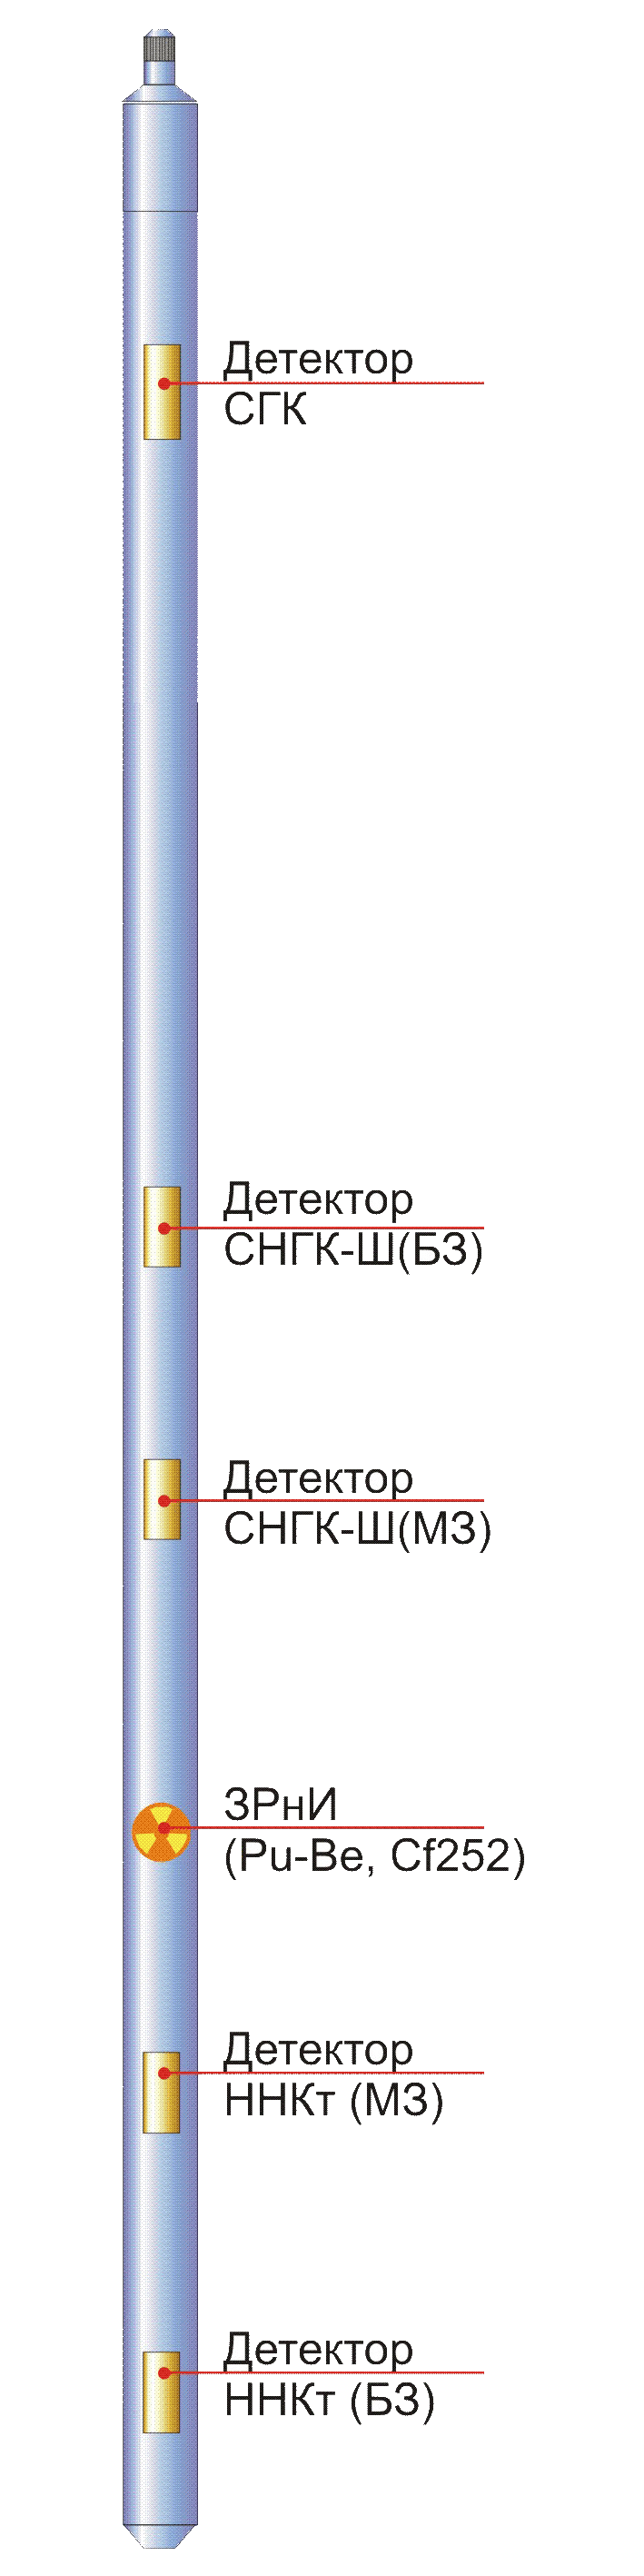 Дефектосткоп-толщиномер